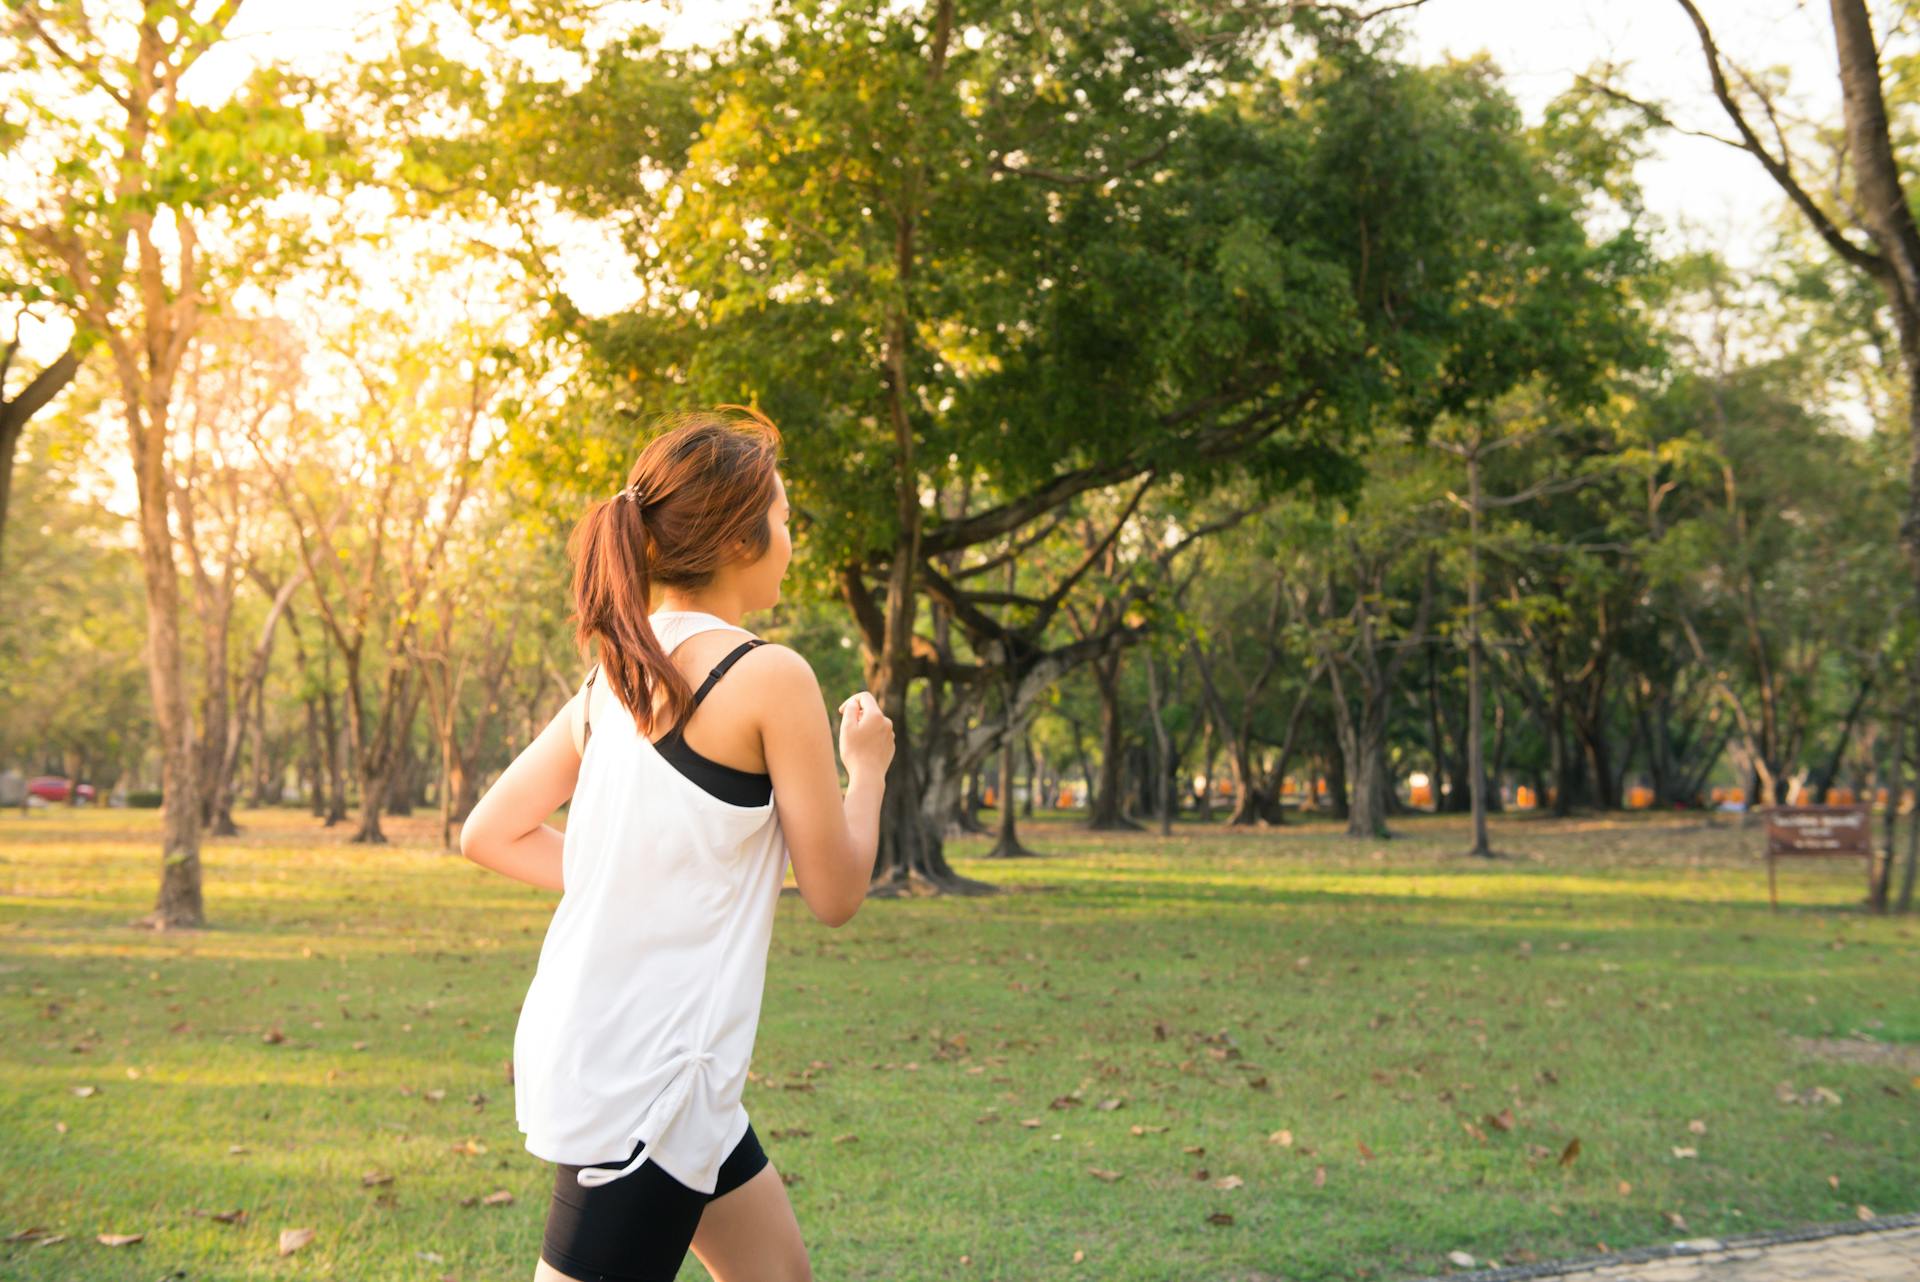 A woman in a while shirt running through a park